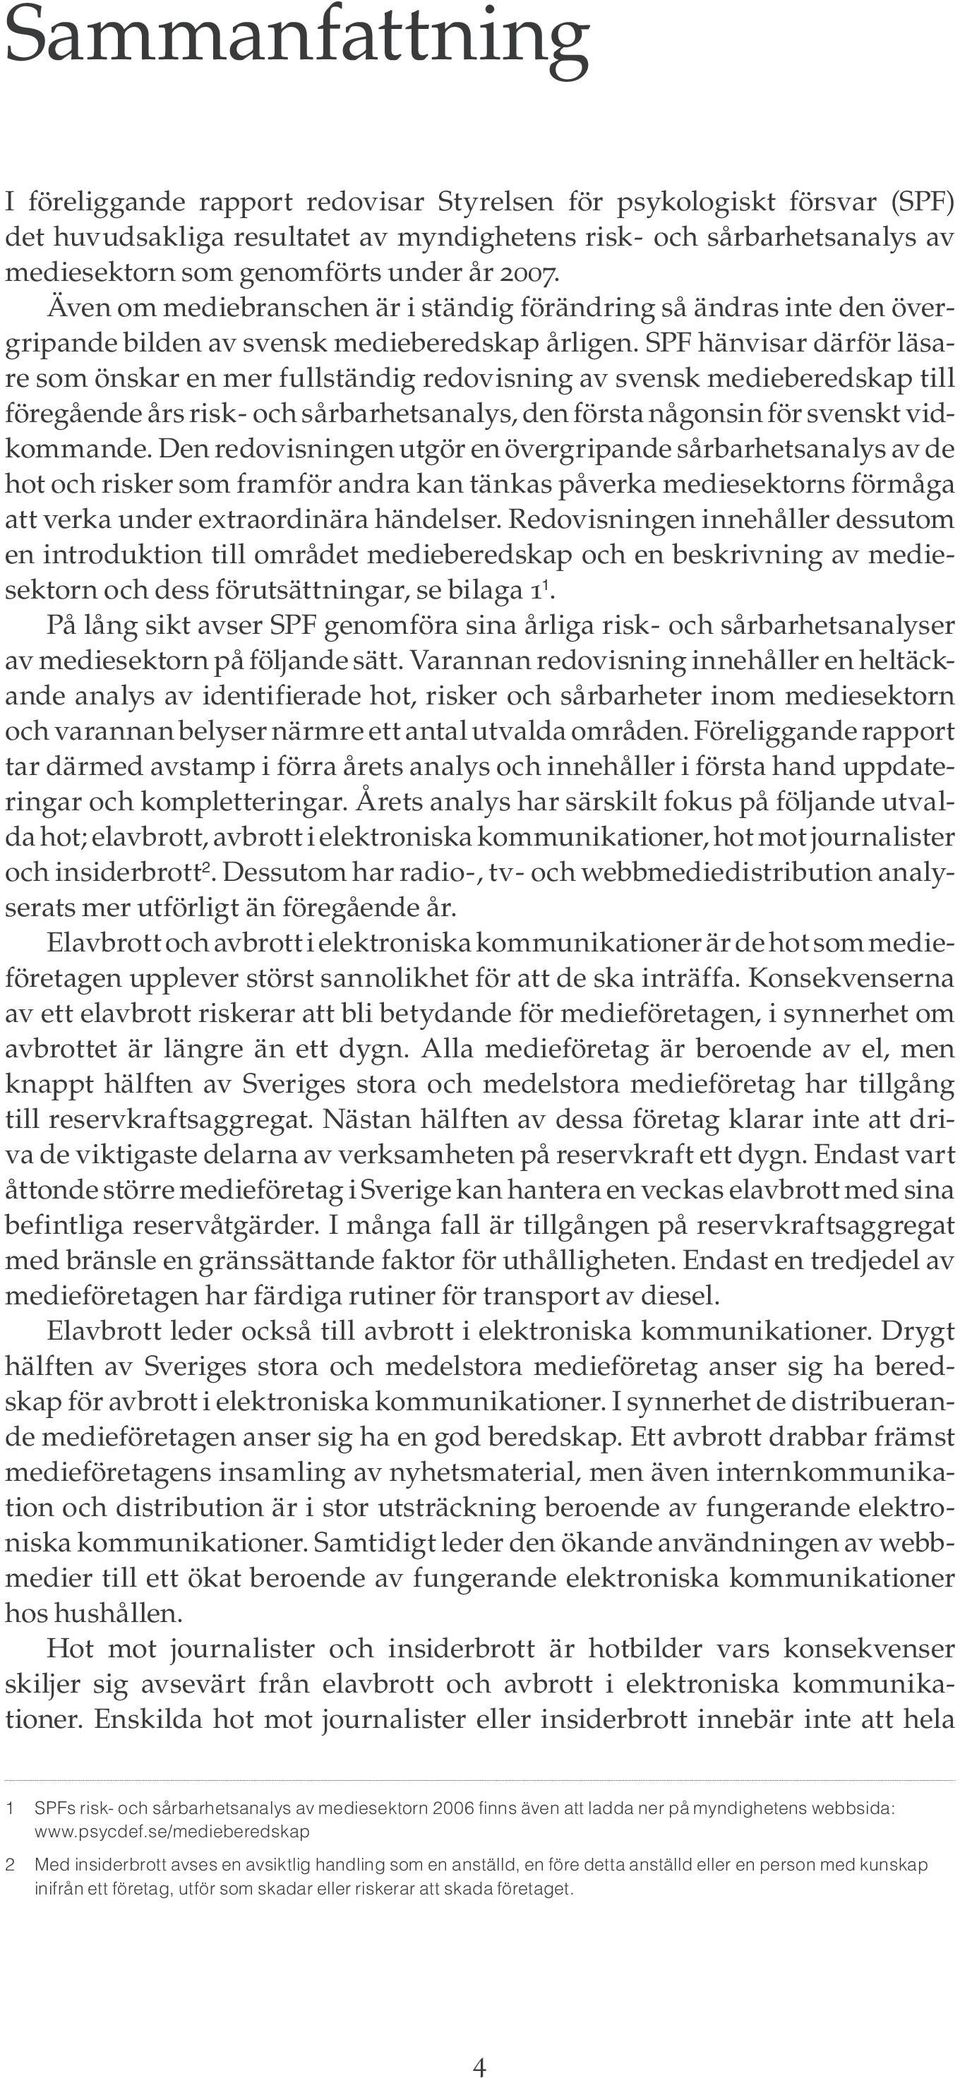 SPF hänvisar därför läsare som önskar en mer fullständig redovisning av svensk medieberedskap till föregående års risk - och sårbarhetsanalys, den första någonsin för svenskt vidkommande.